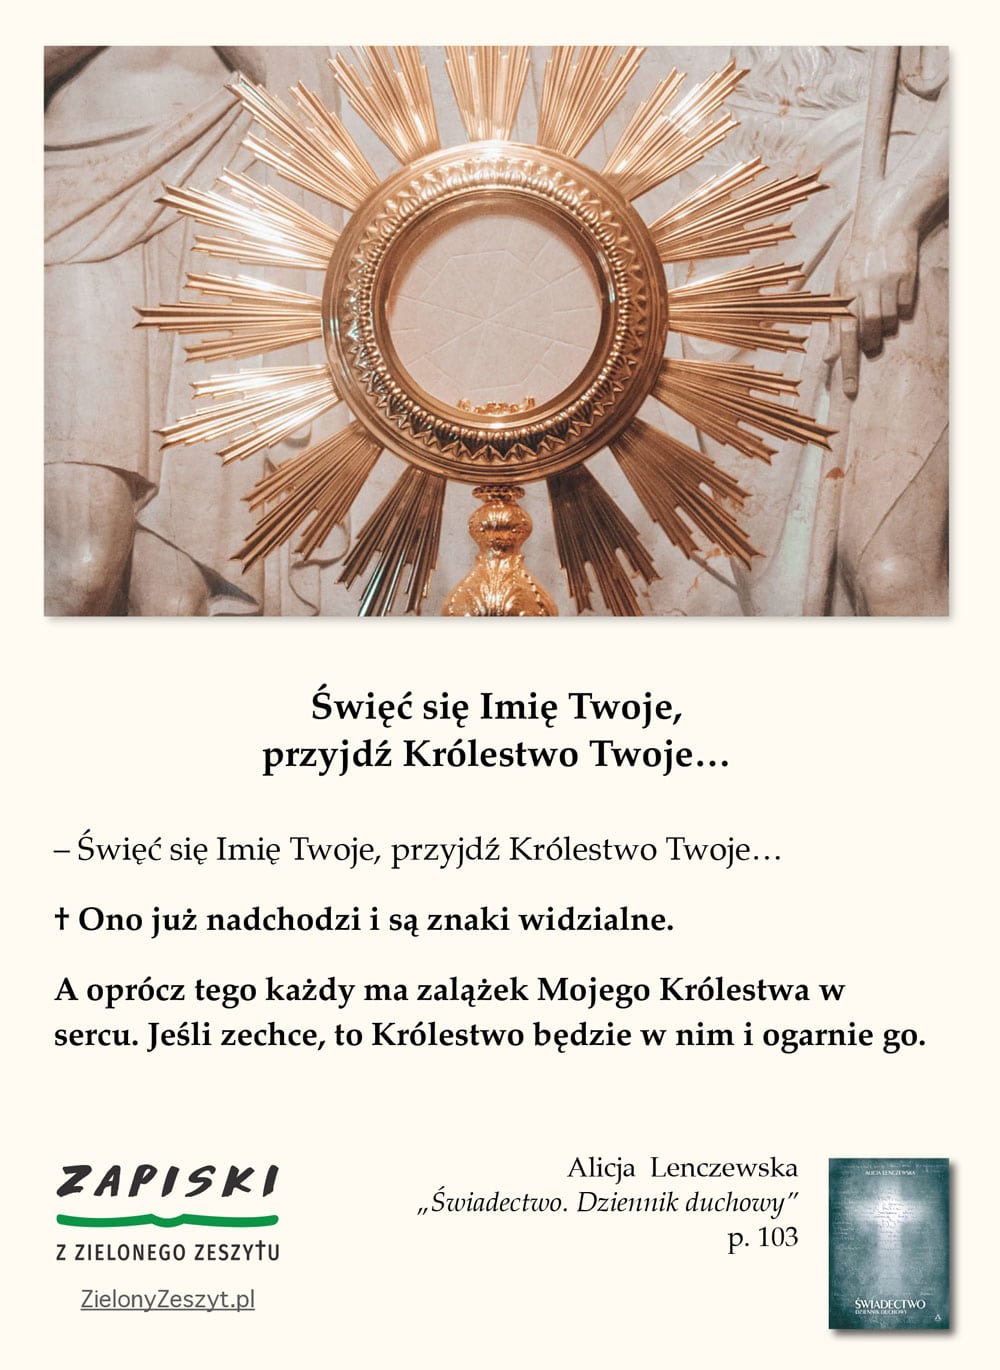 Alicja Lenczewska, „Świadectwo. Dziennik duchowy”, p. 103 (Święć się imię Twoje, przyjdź Królestwo Twoje…)